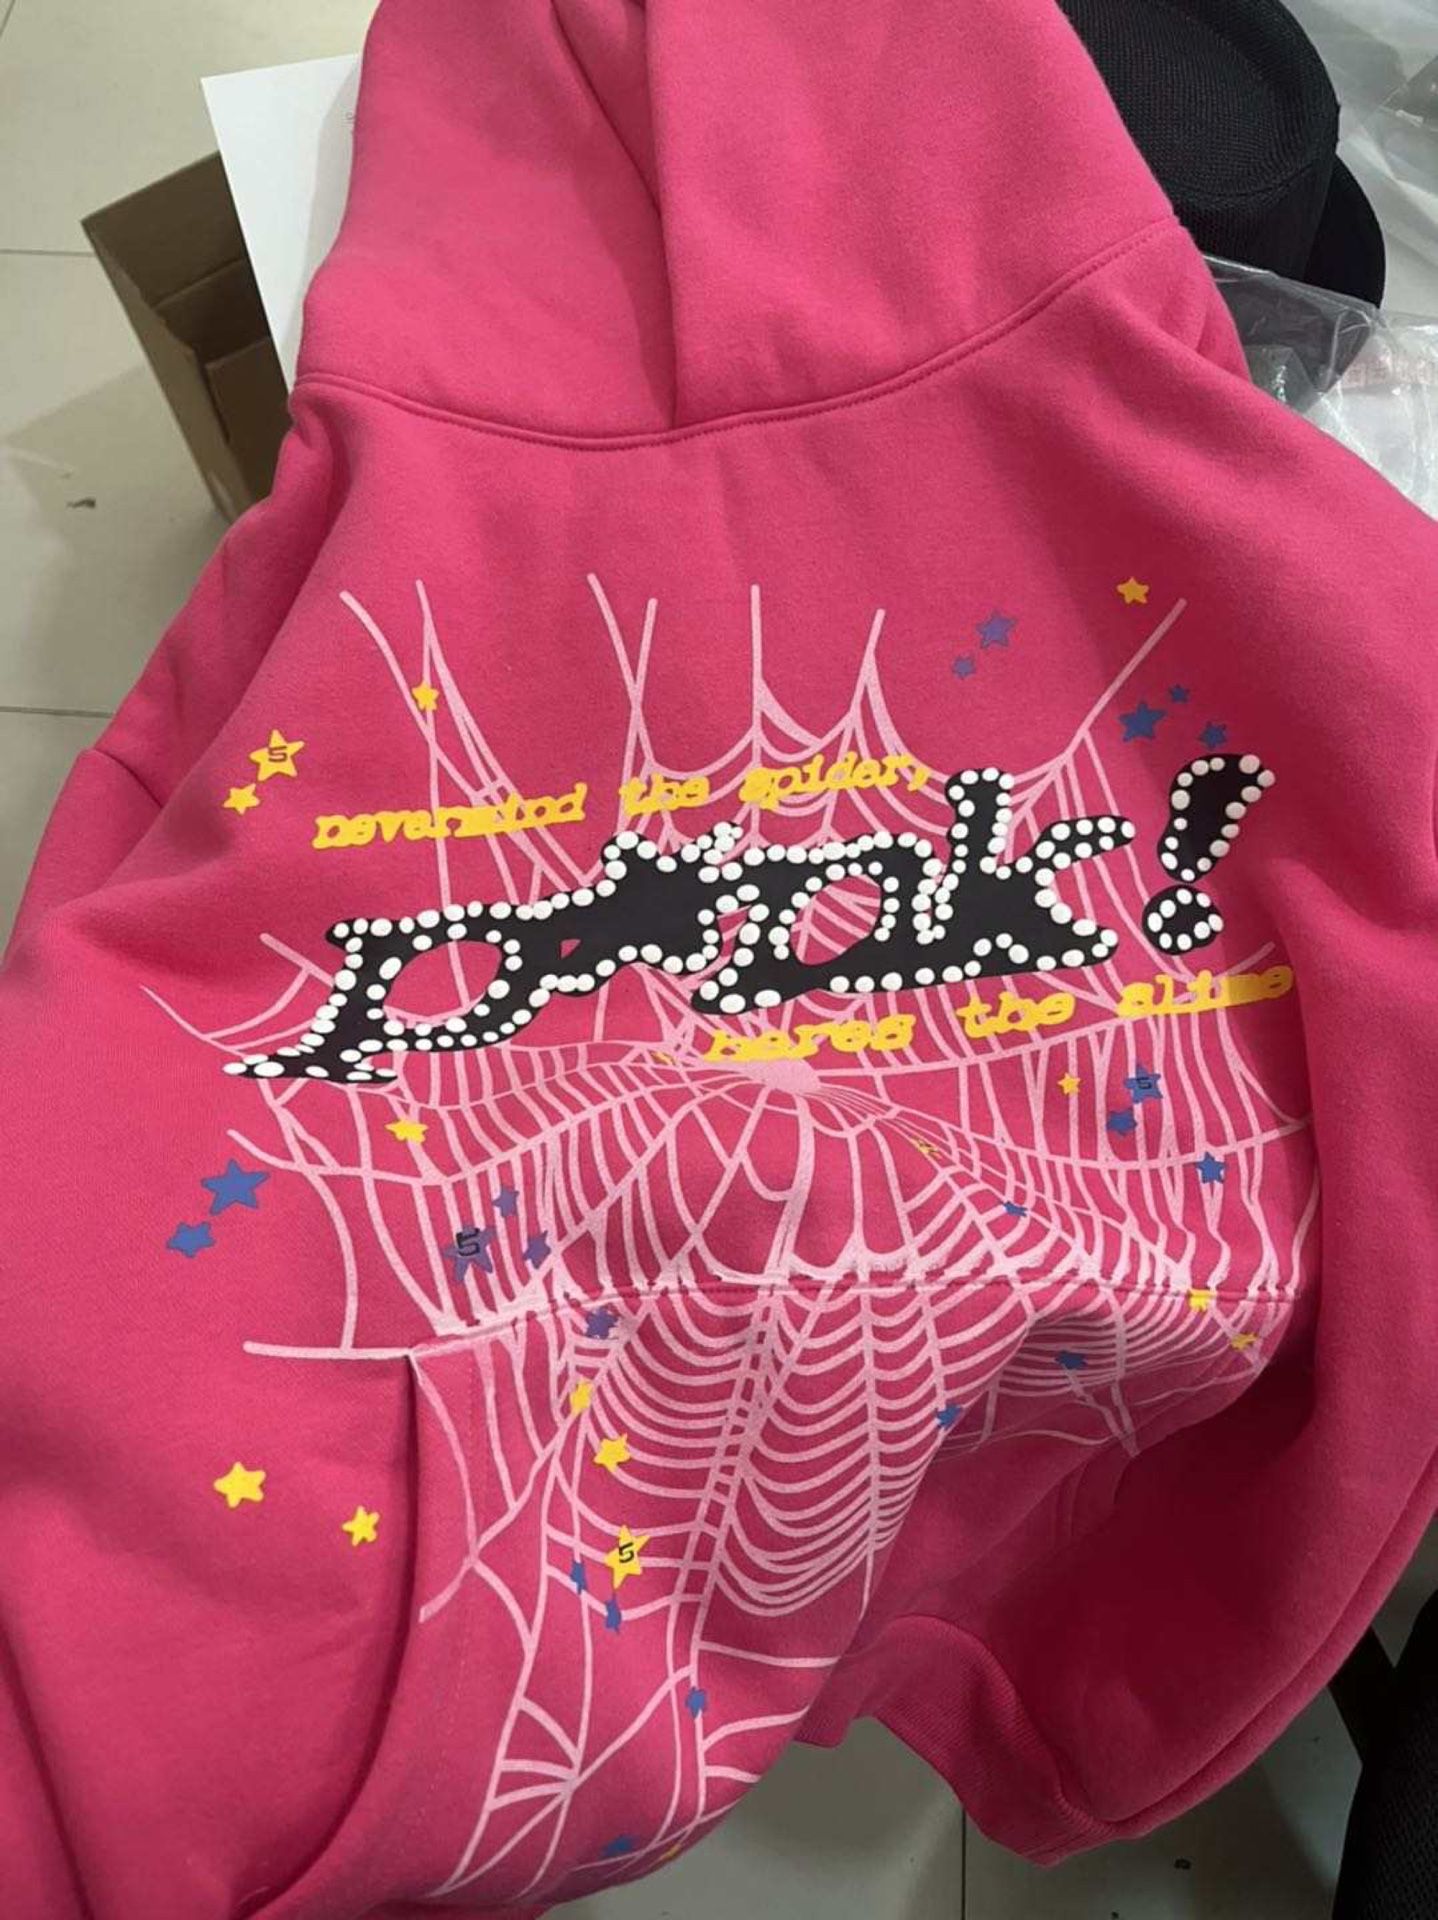 Pink sp5der hoodie